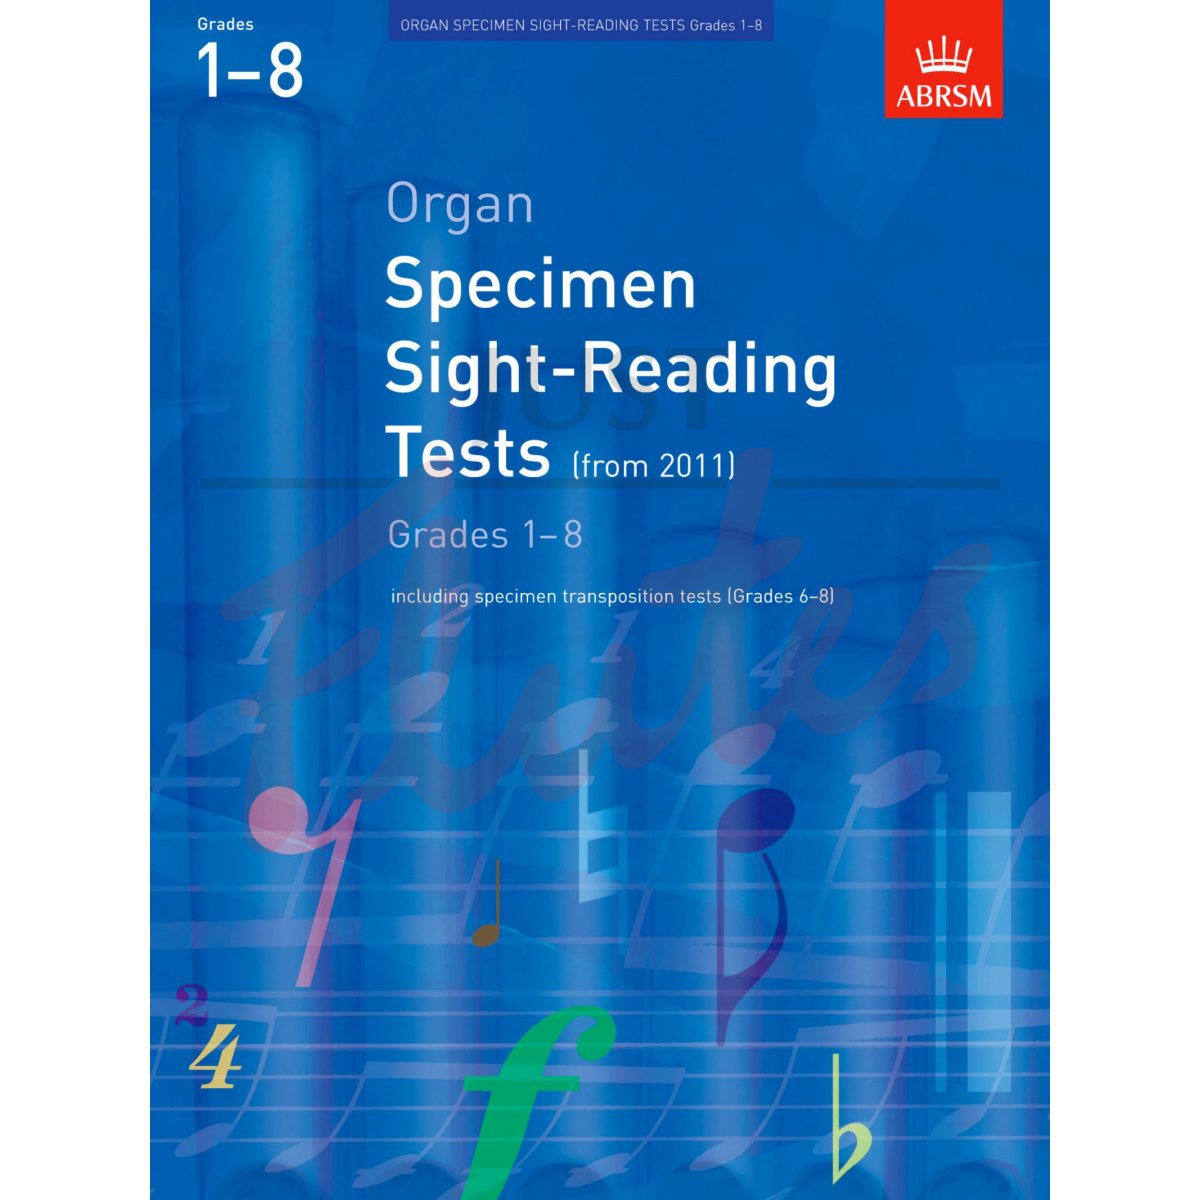 Specimen Sight-Reading Organ Grades 1-8 from 2011